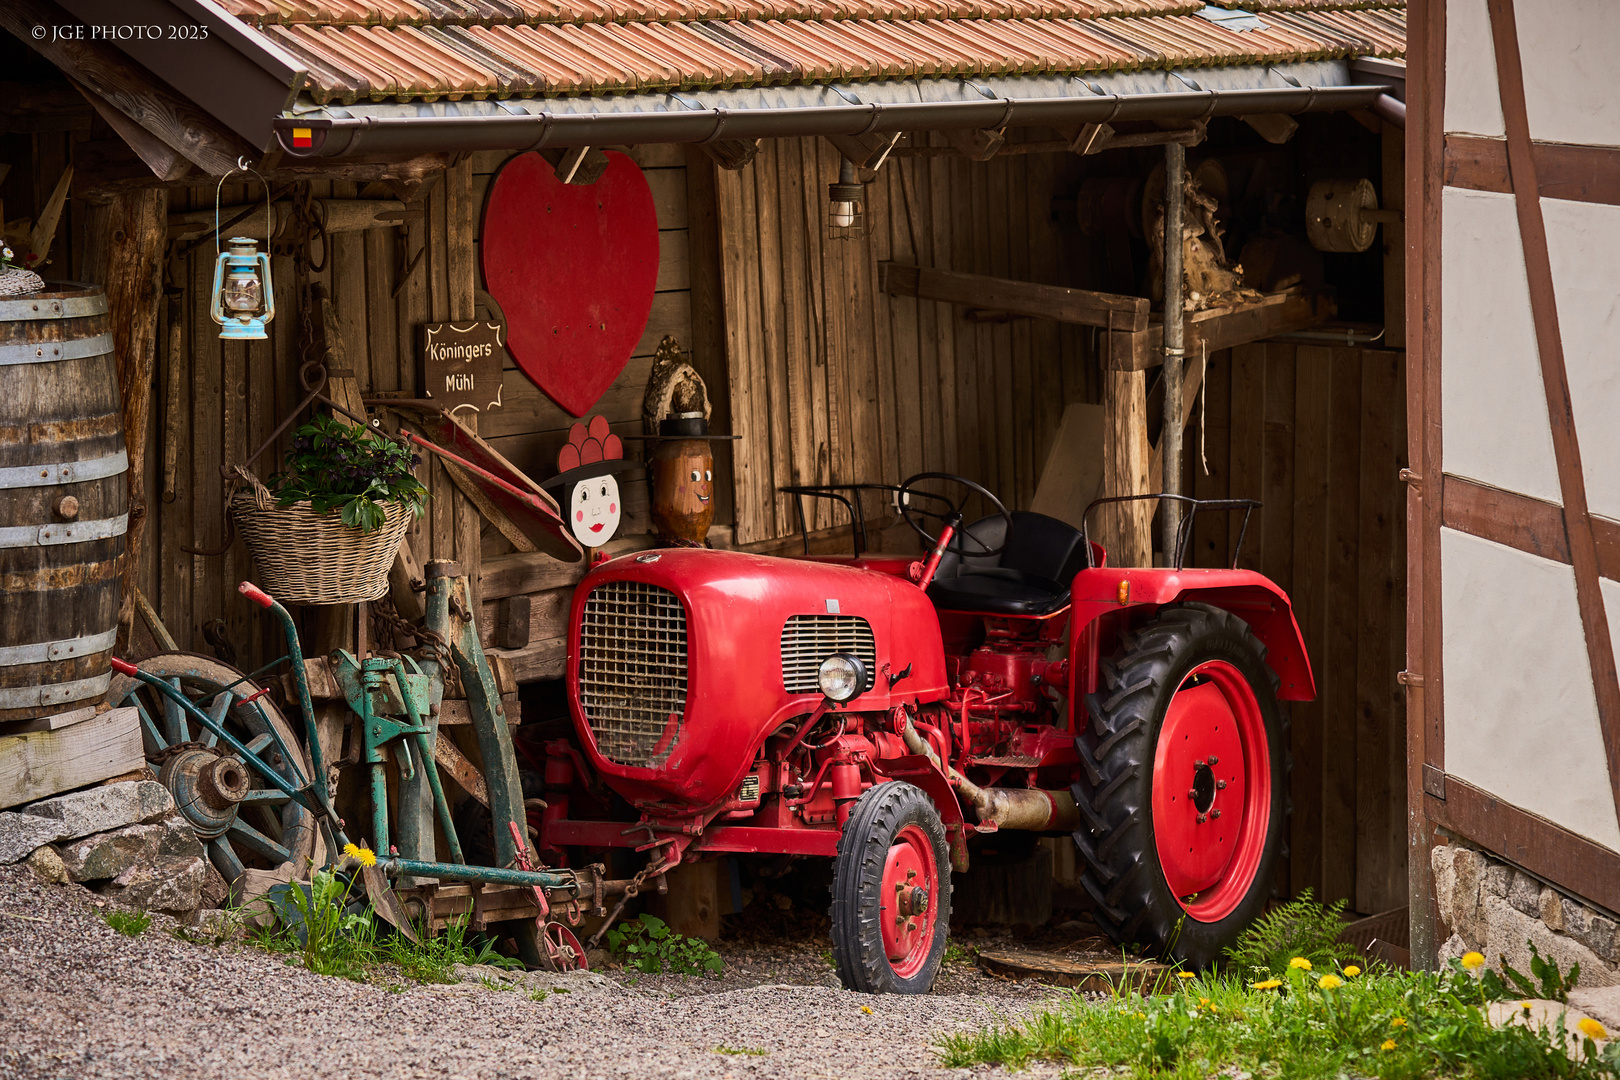 Roter Traktor der Köninger-Hof Mühle